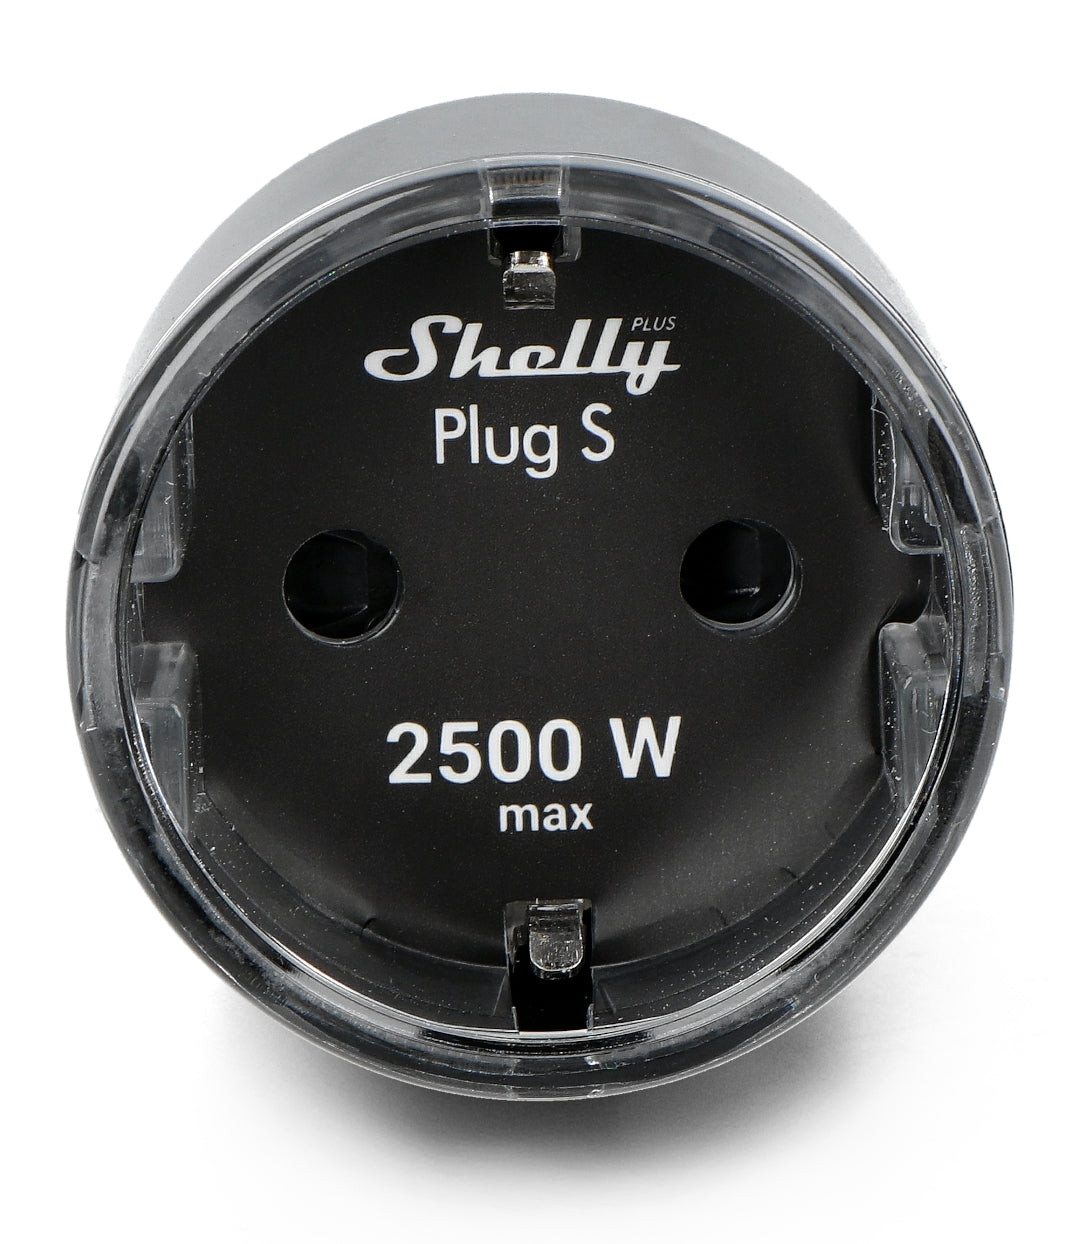 Shelly Plug S Plus - Tomada Portátil Inteligente 12A 2500W WiFi/BT Preta: Indicações LED multicores para monitorização de energia e estado dos aparelhos.